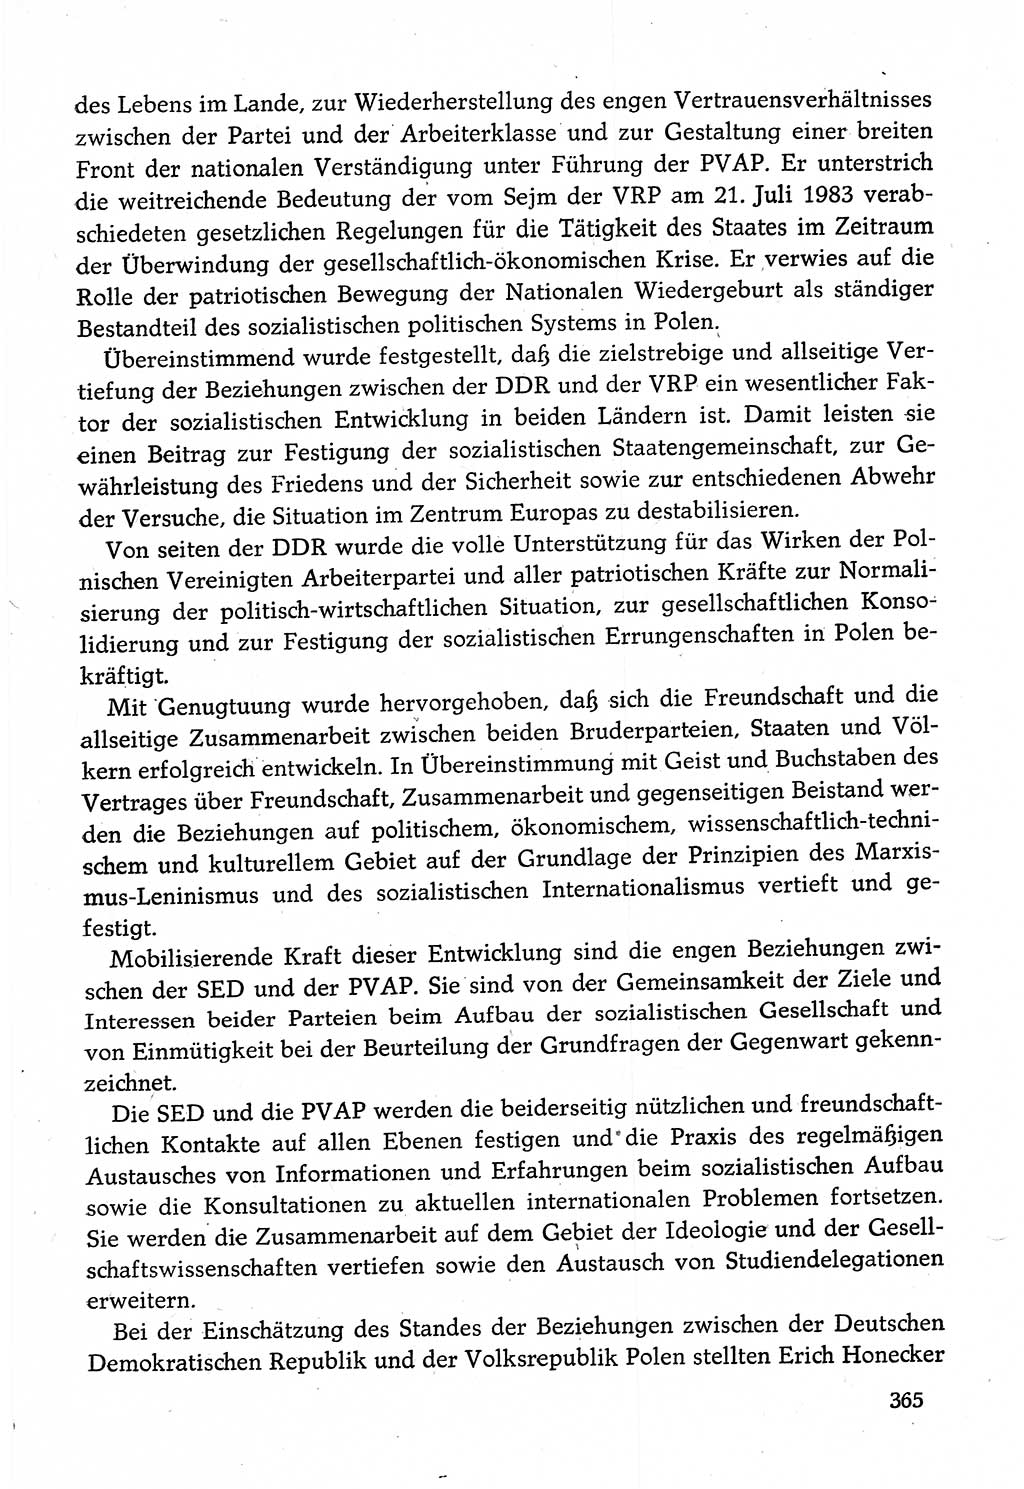 Dokumente der Sozialistischen Einheitspartei Deutschlands (SED) [Deutsche Demokratische Republik (DDR)] 1982-1983, Seite 365 (Dok. SED DDR 1982-1983, S. 365)